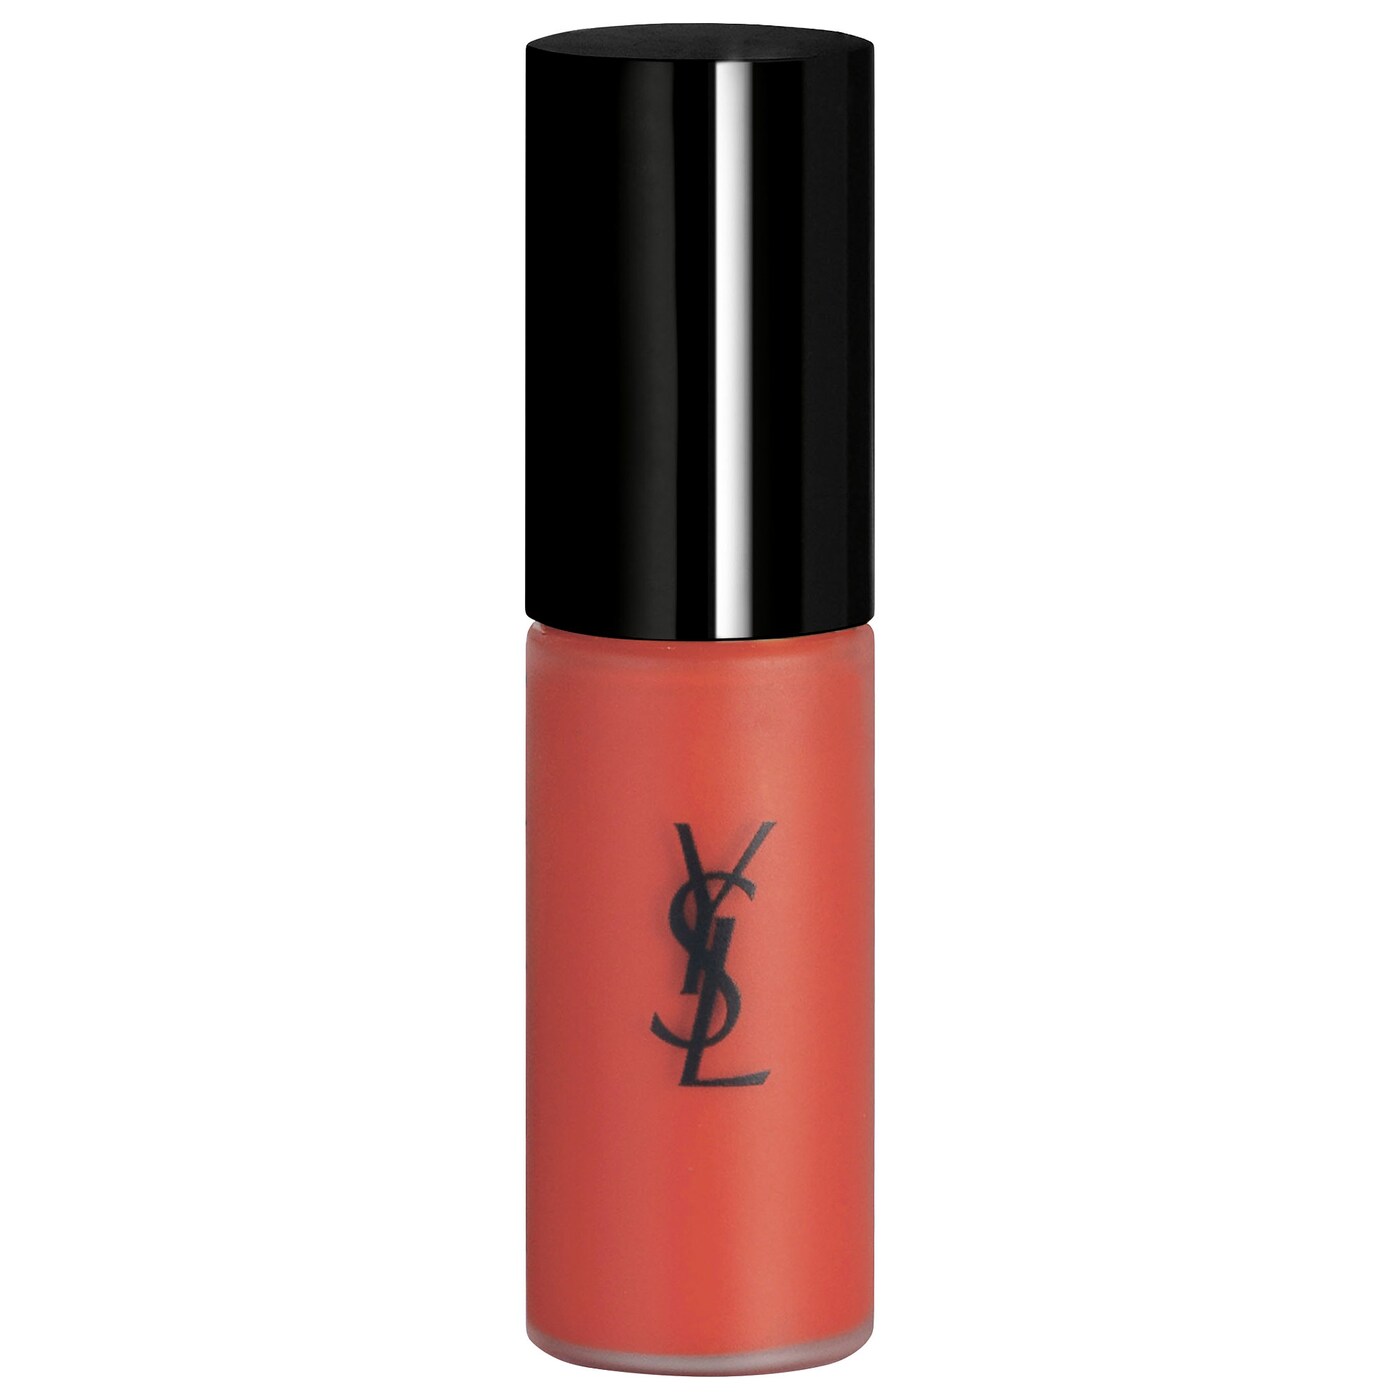 Velvet Cream Liquid Lipstick in shade 216 trial size